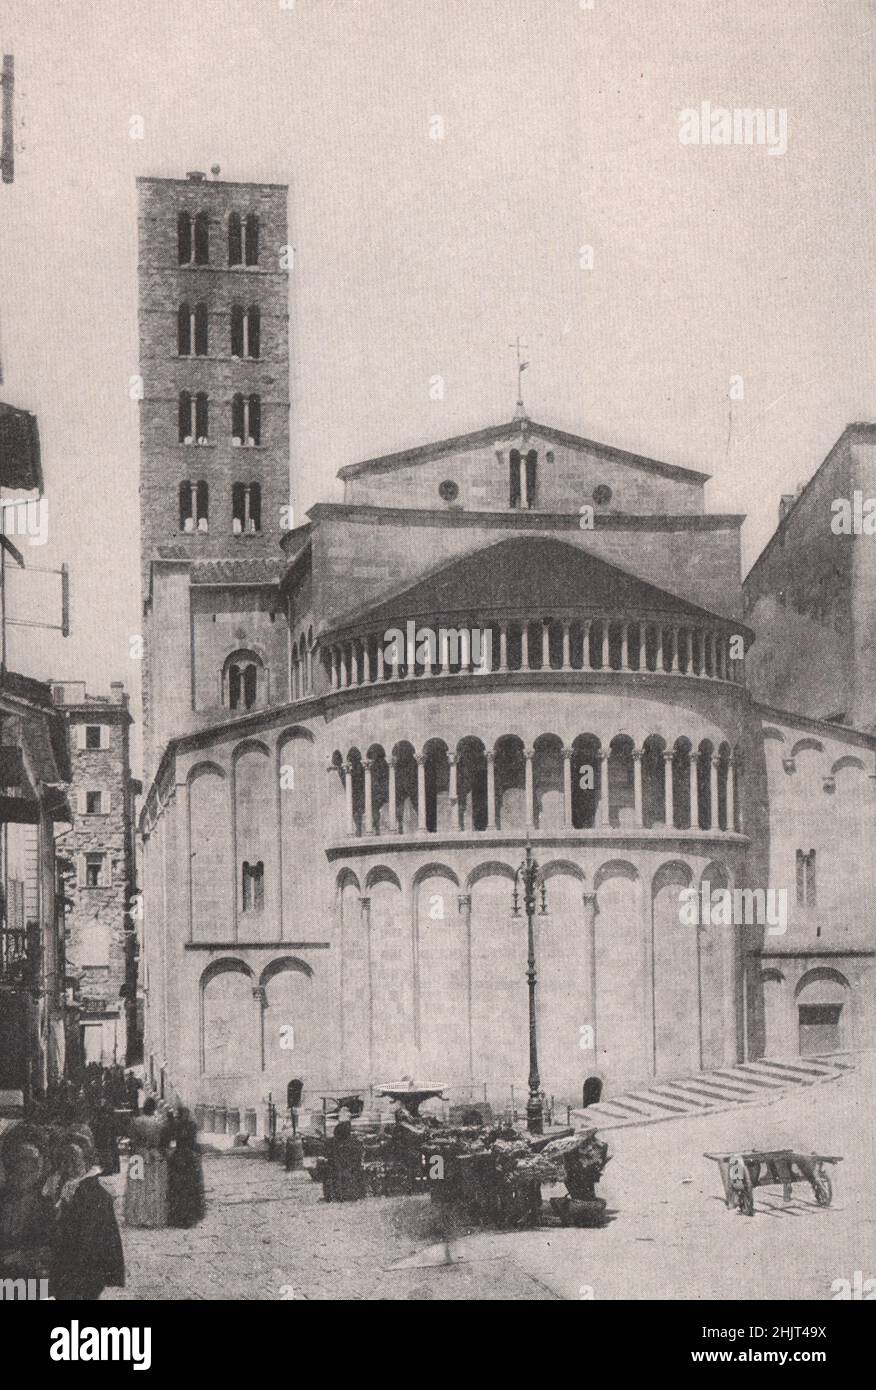 Santa Maria Della Pieve de la Piazza Vasari, Arezzo. Italie. Toscane (1923) Banque D'Images